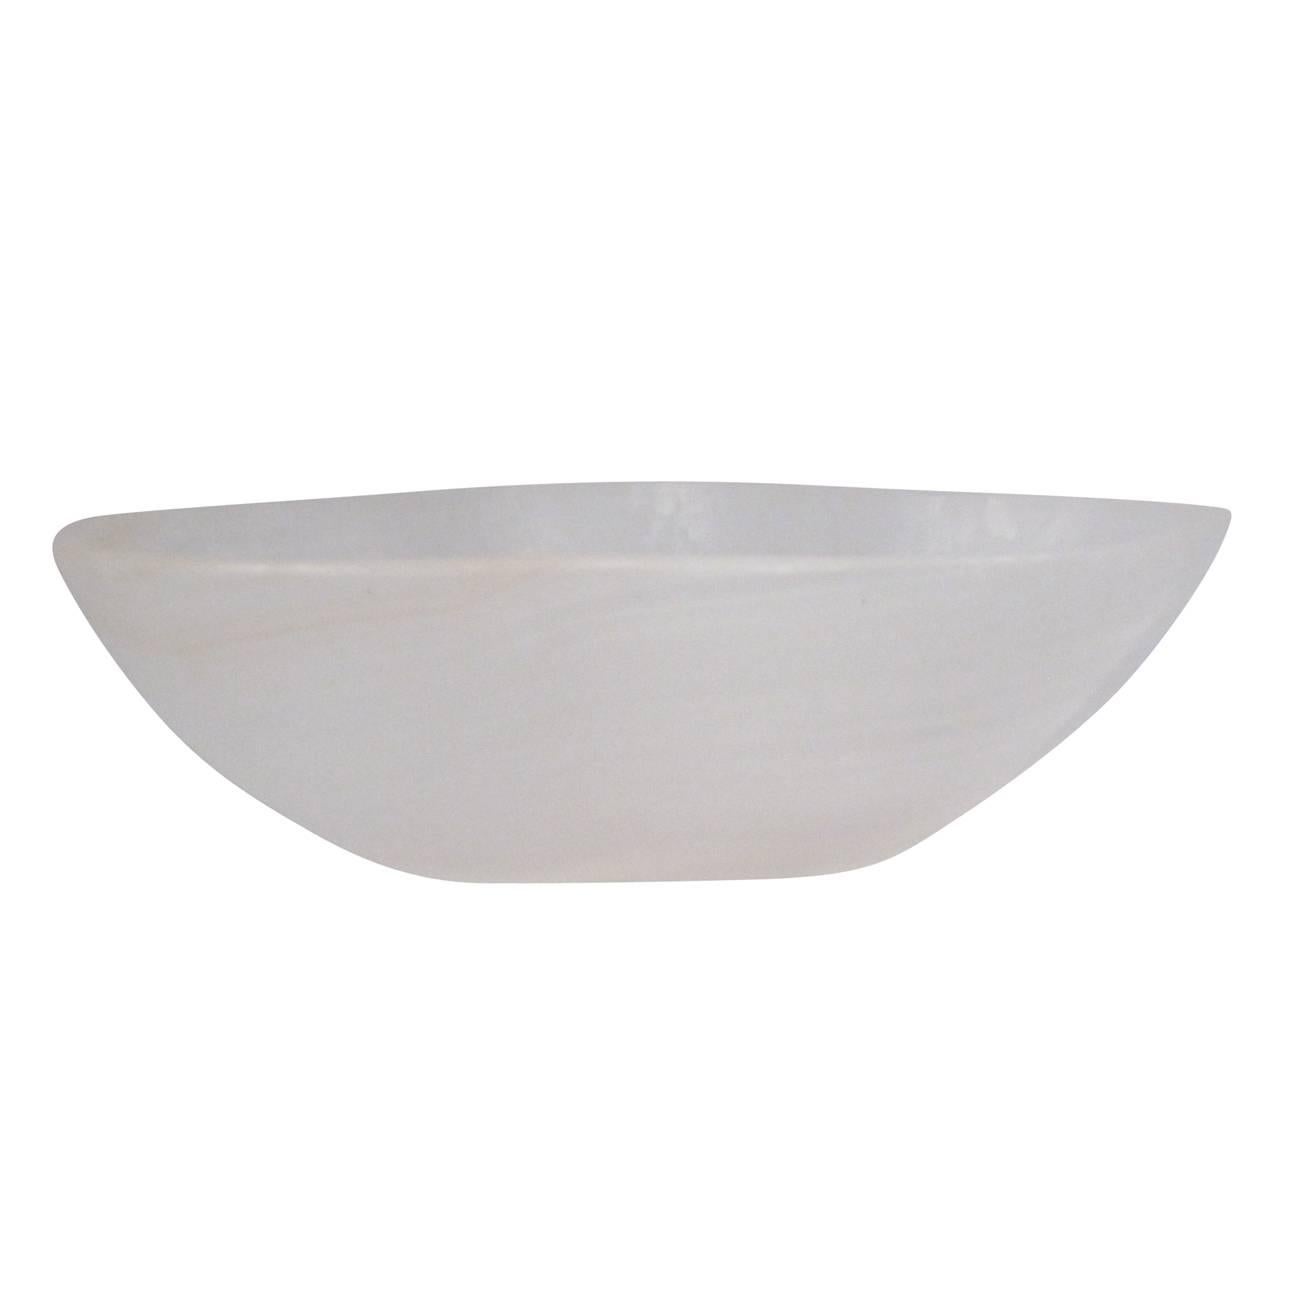 A small undulating white onyx bowl.